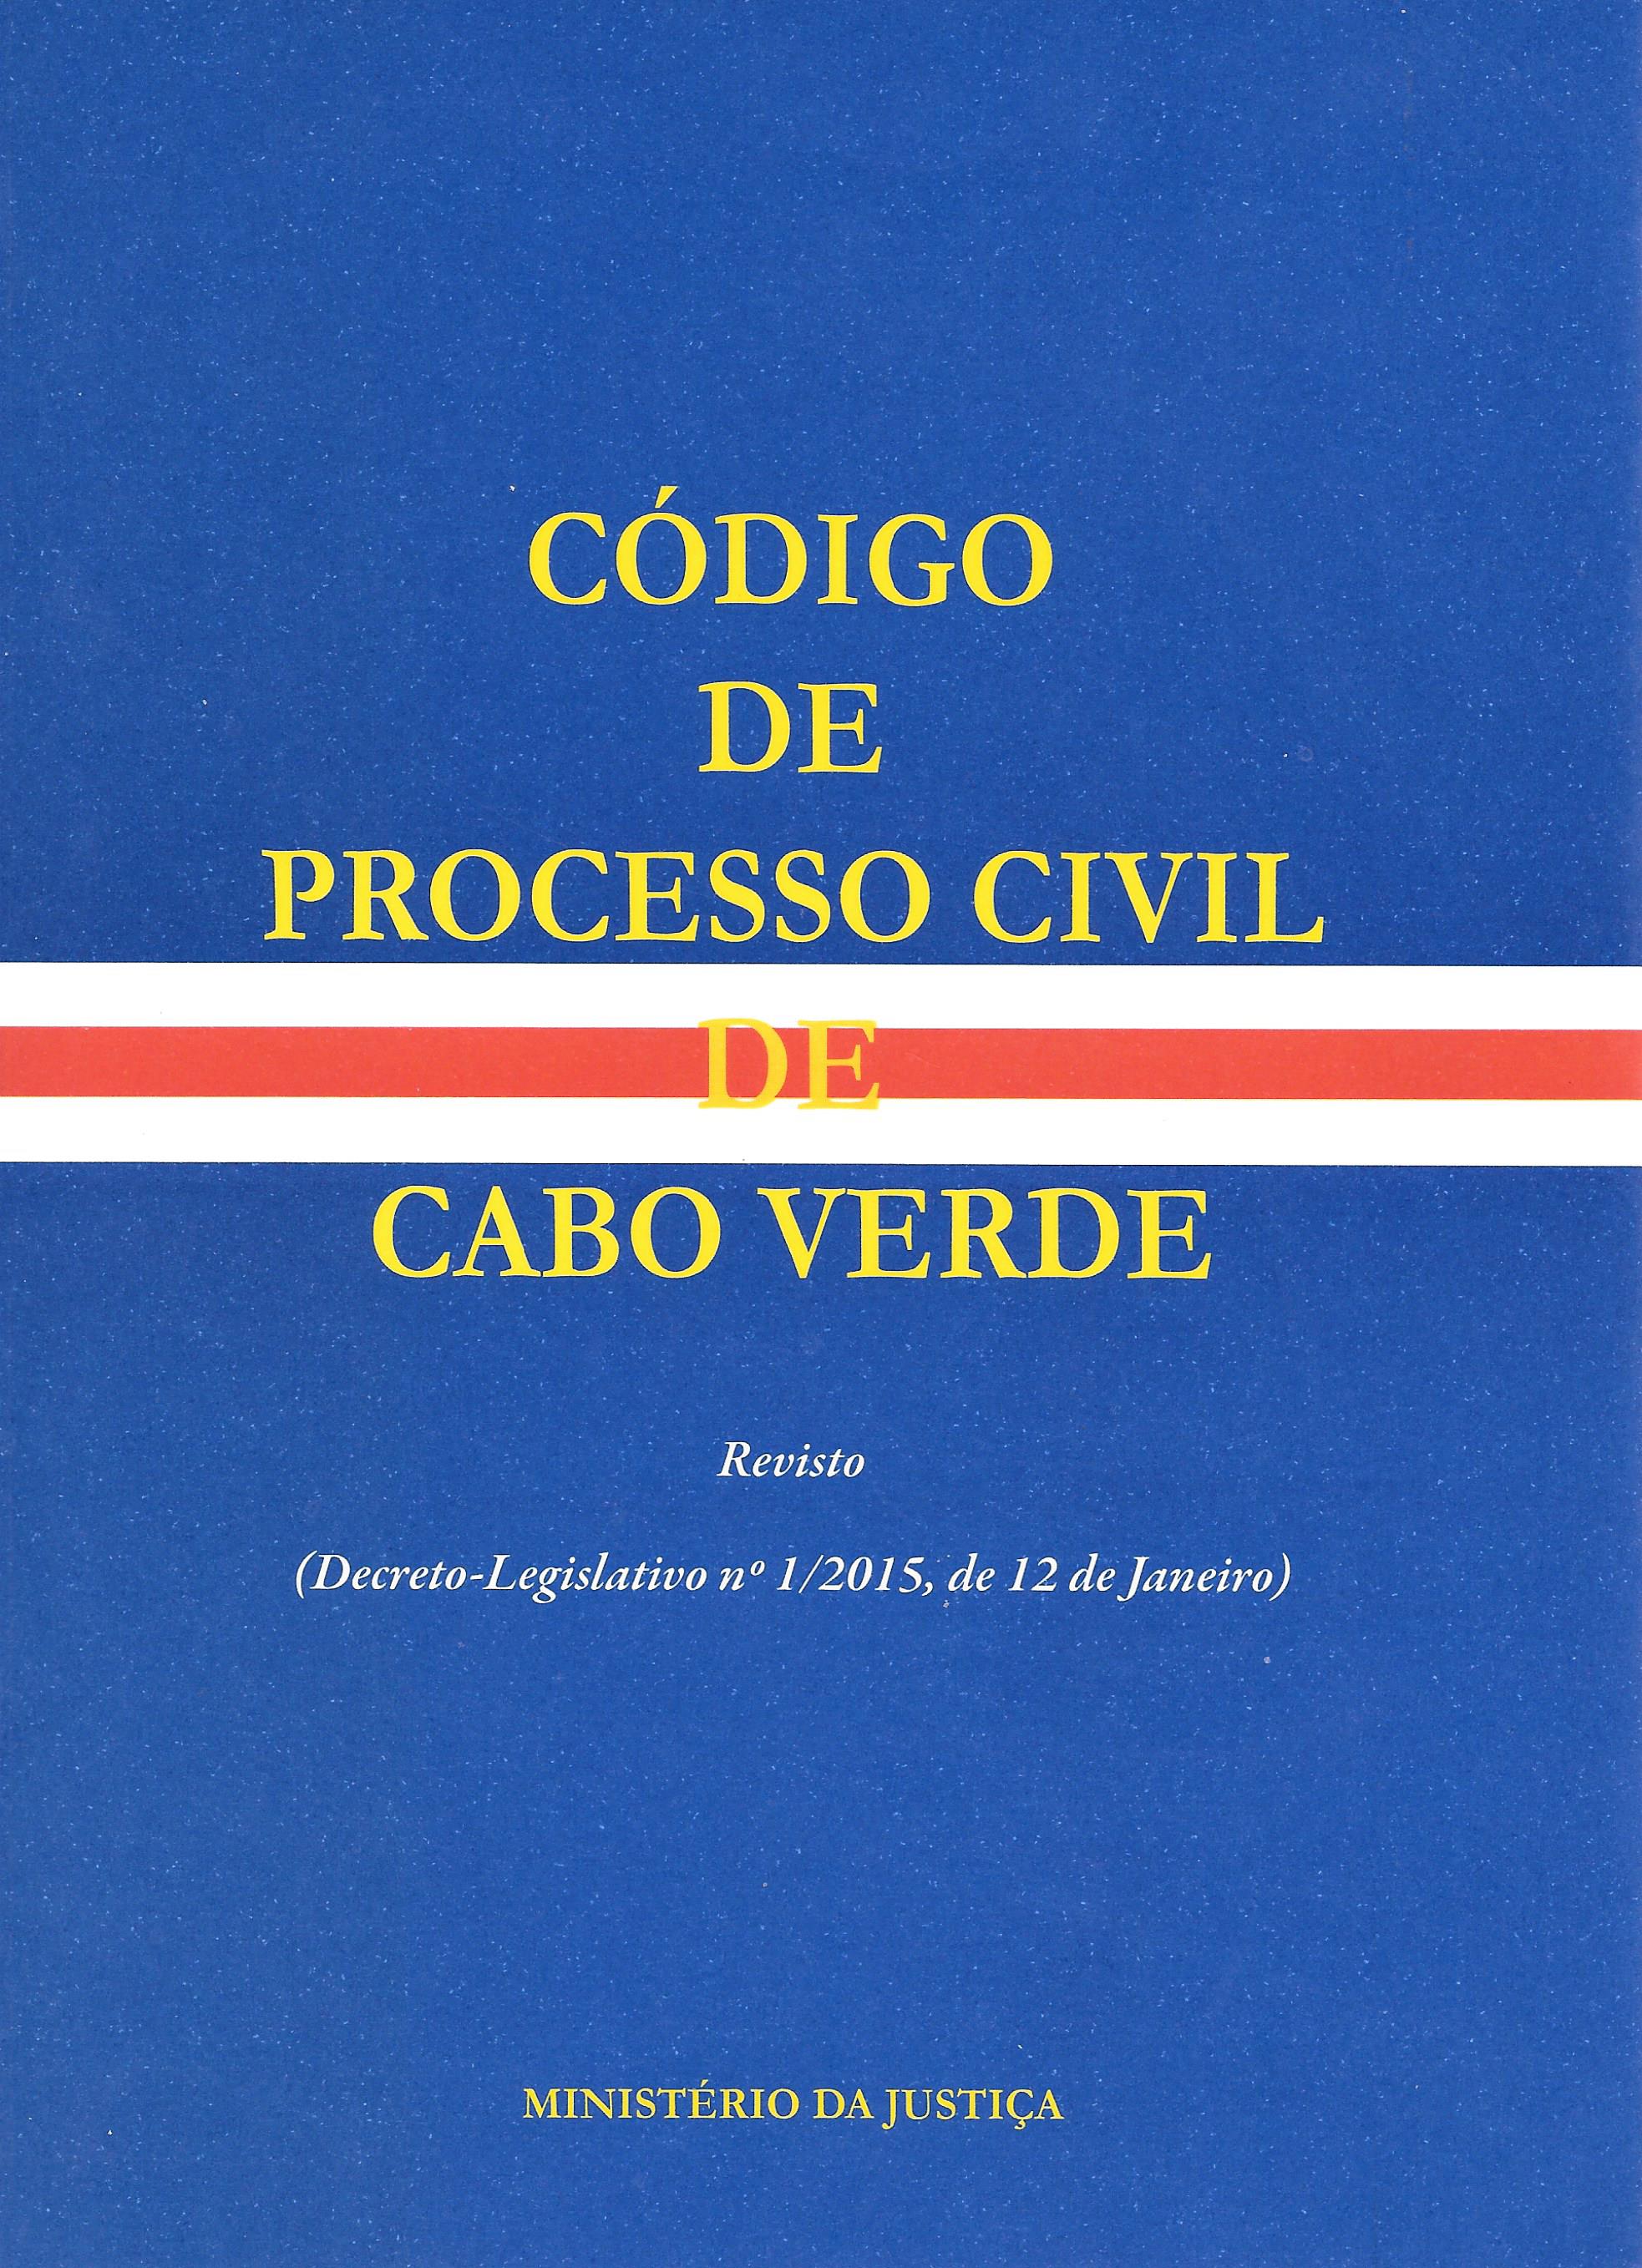 CÓDIGO DE PROCESSO CIVIL DE CABO VERDE